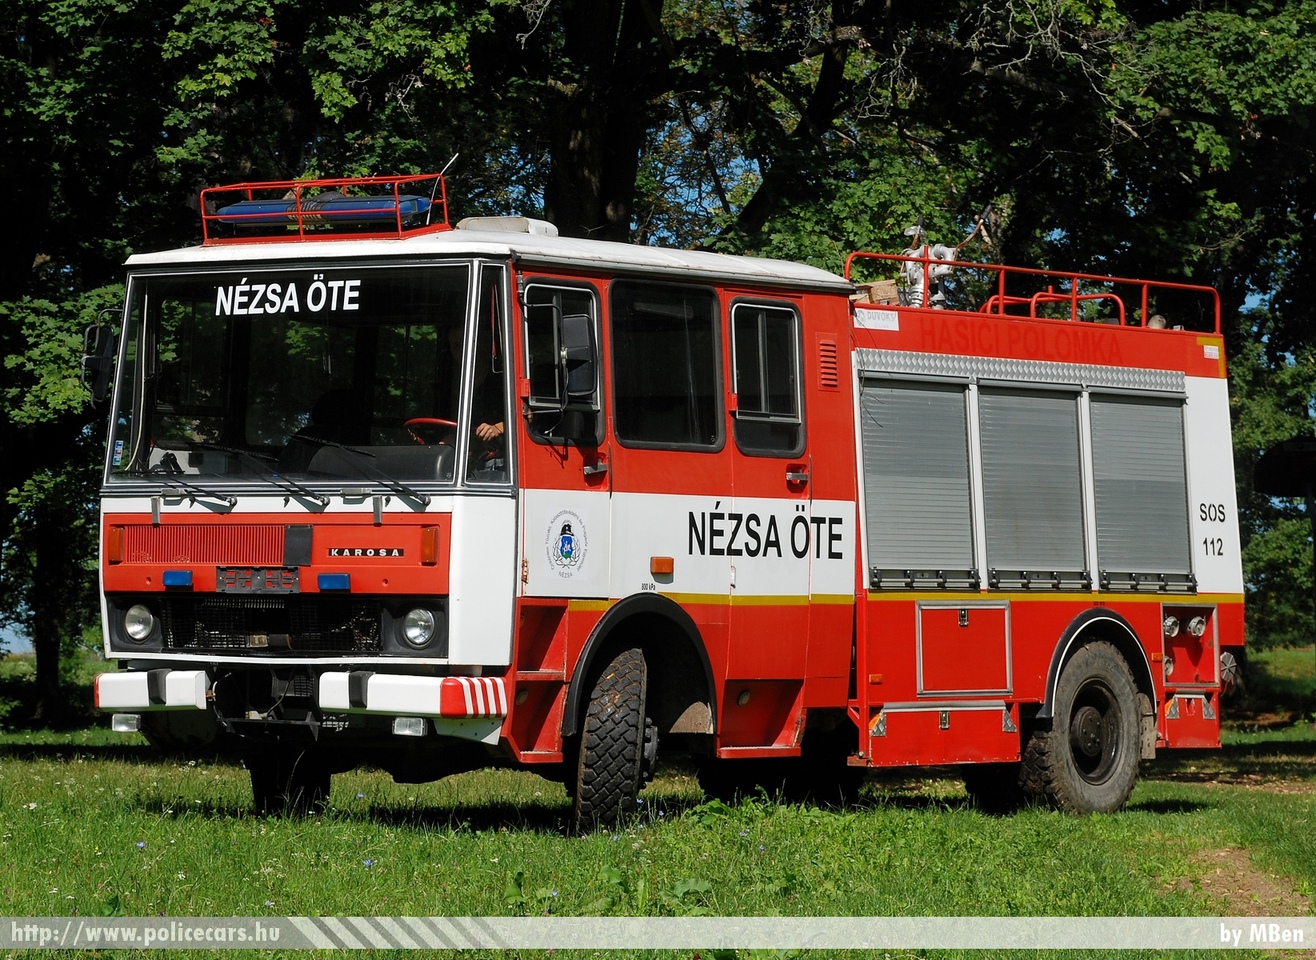 Karosa, Nézsai Önkéntes Tûzoltó Egyesület, fotó: MBen
Keywords: tûzoltó tûzoltóautó tûzoltóság magyar Magyarország ÖTE hungarian Hungary fire firetruck